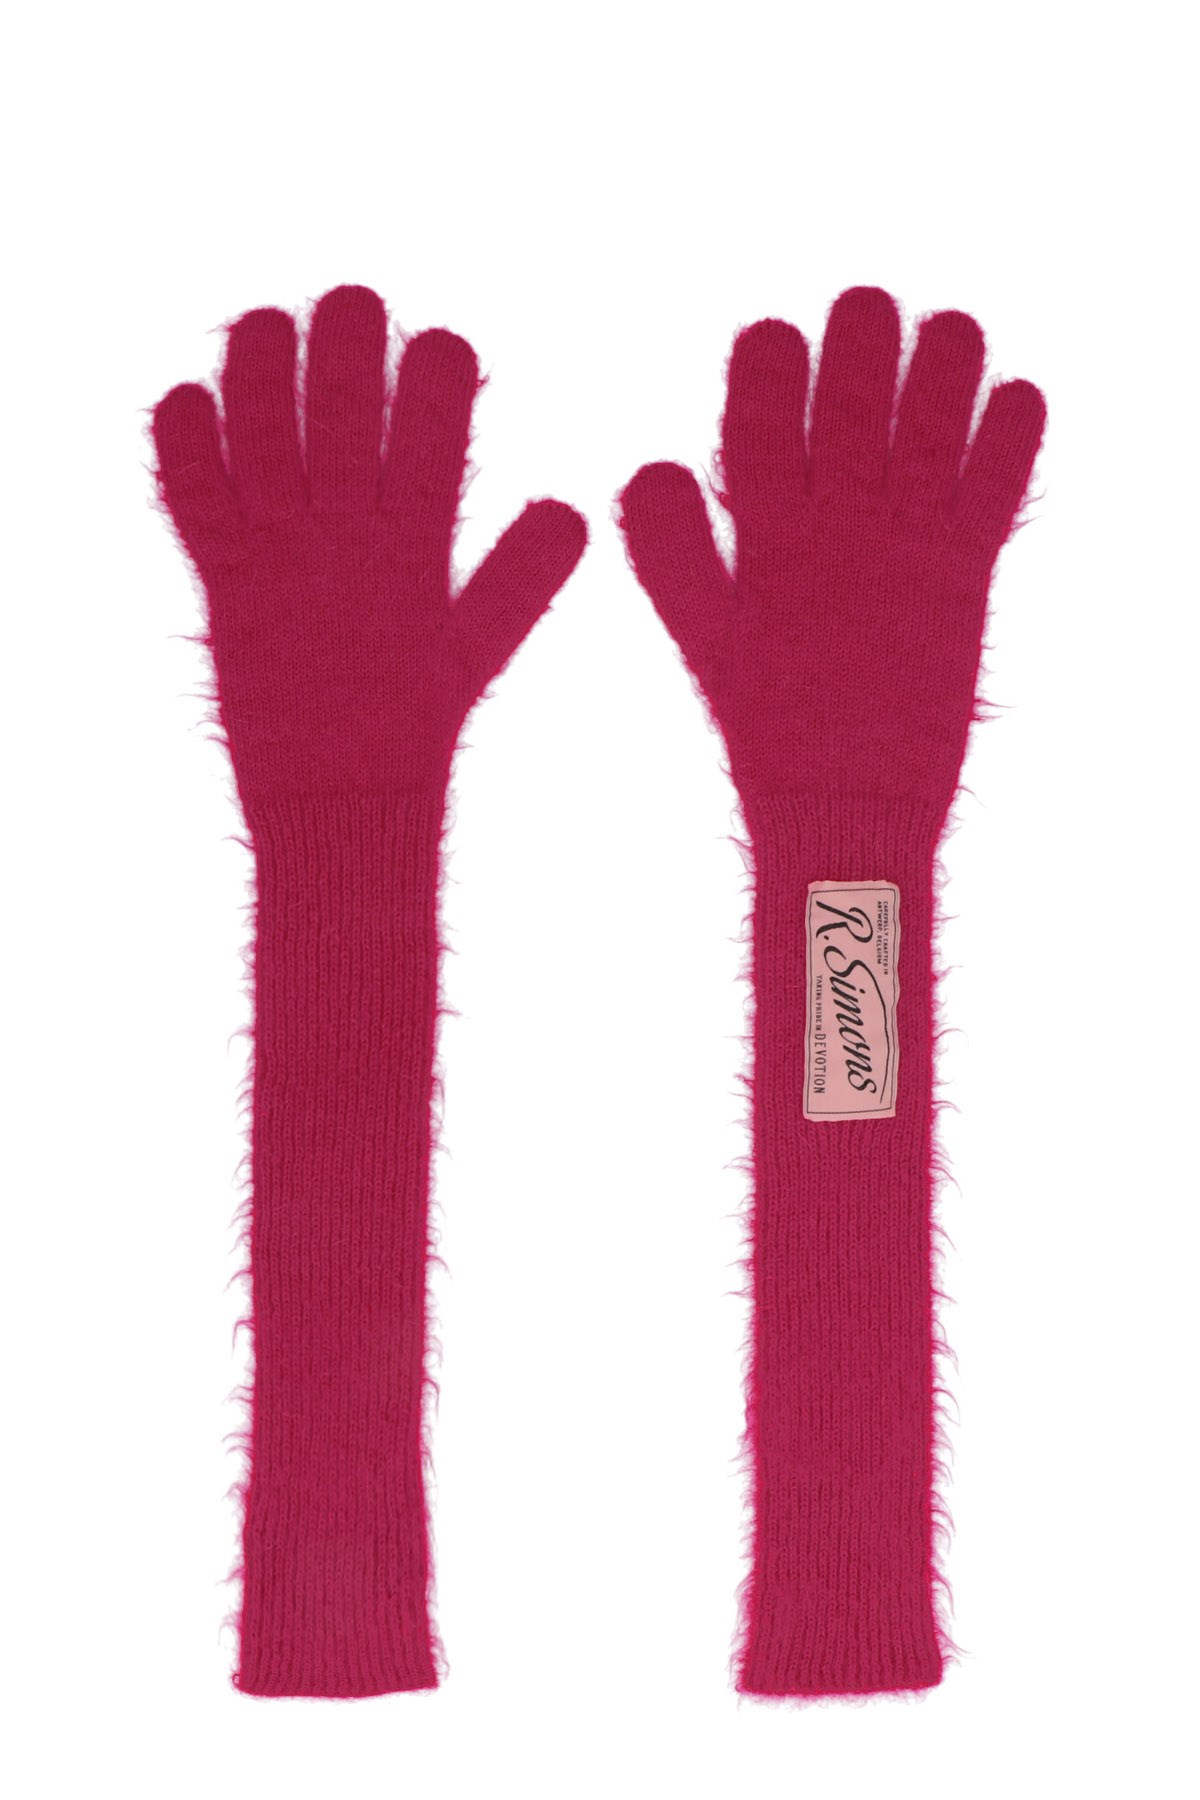 RAF SIMONS Long Gloves